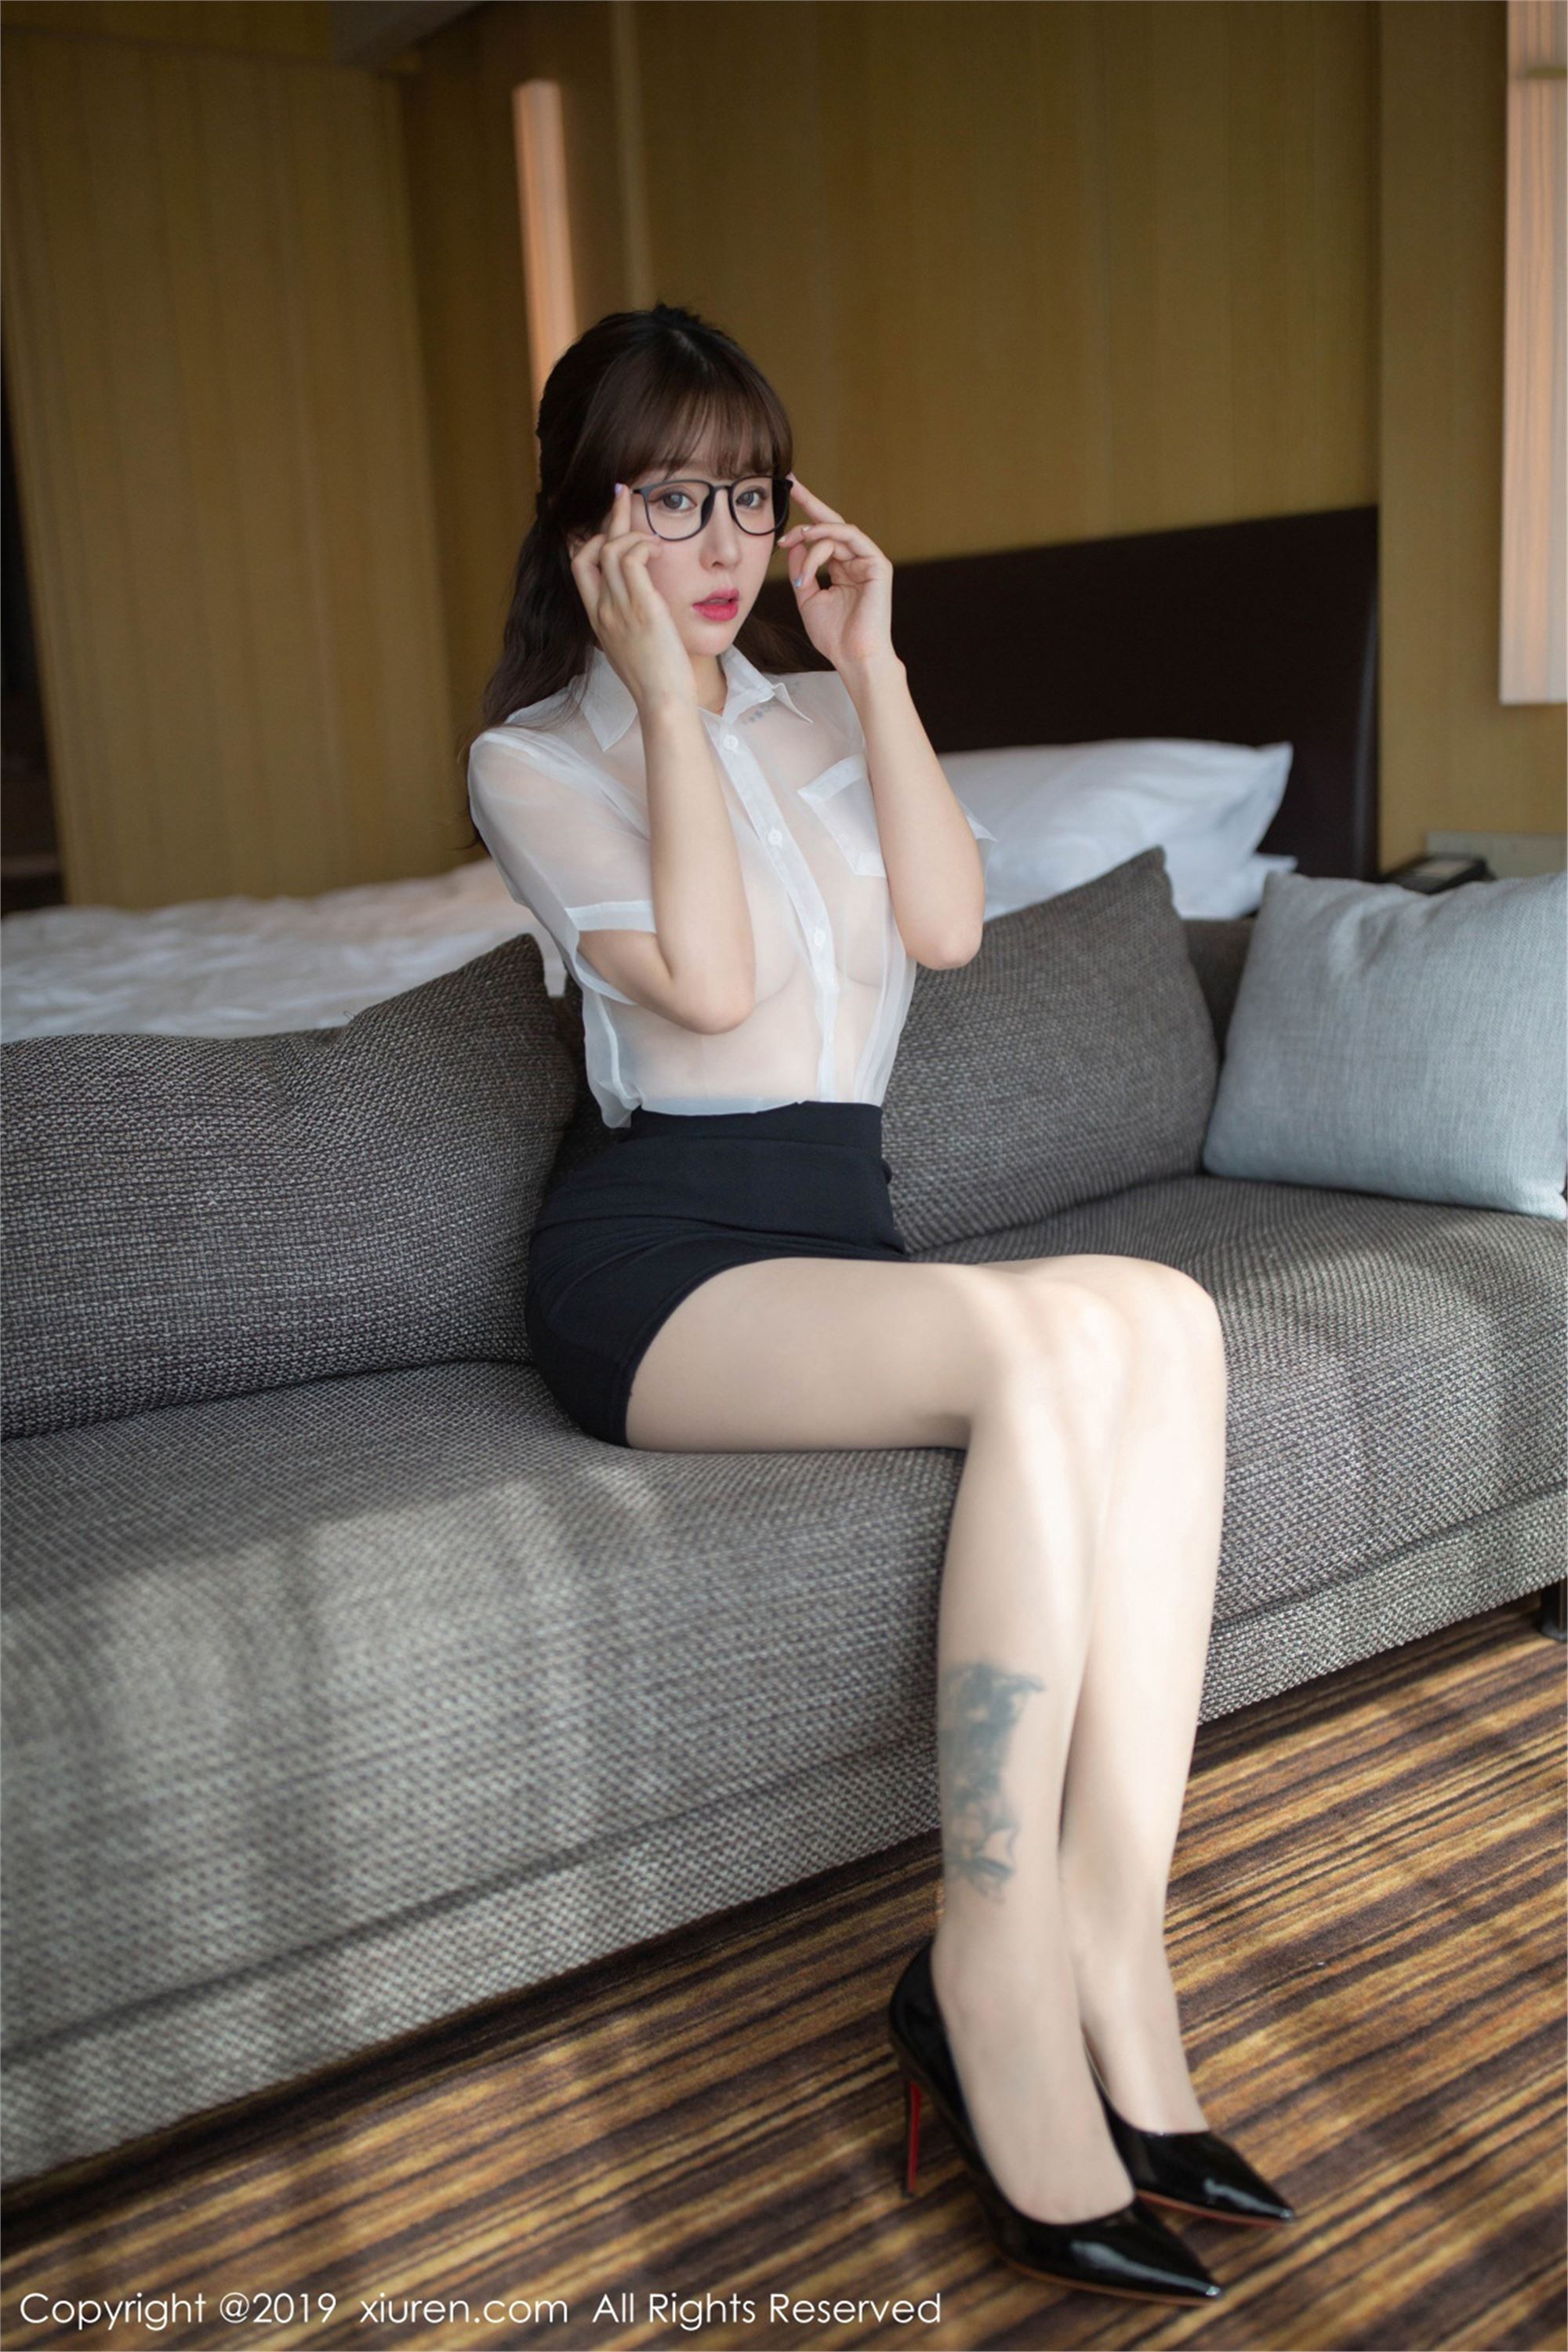 [xiuren.com] June 14, 2019 no.1498 shredded meat seductive female secretary Wang Yuchun